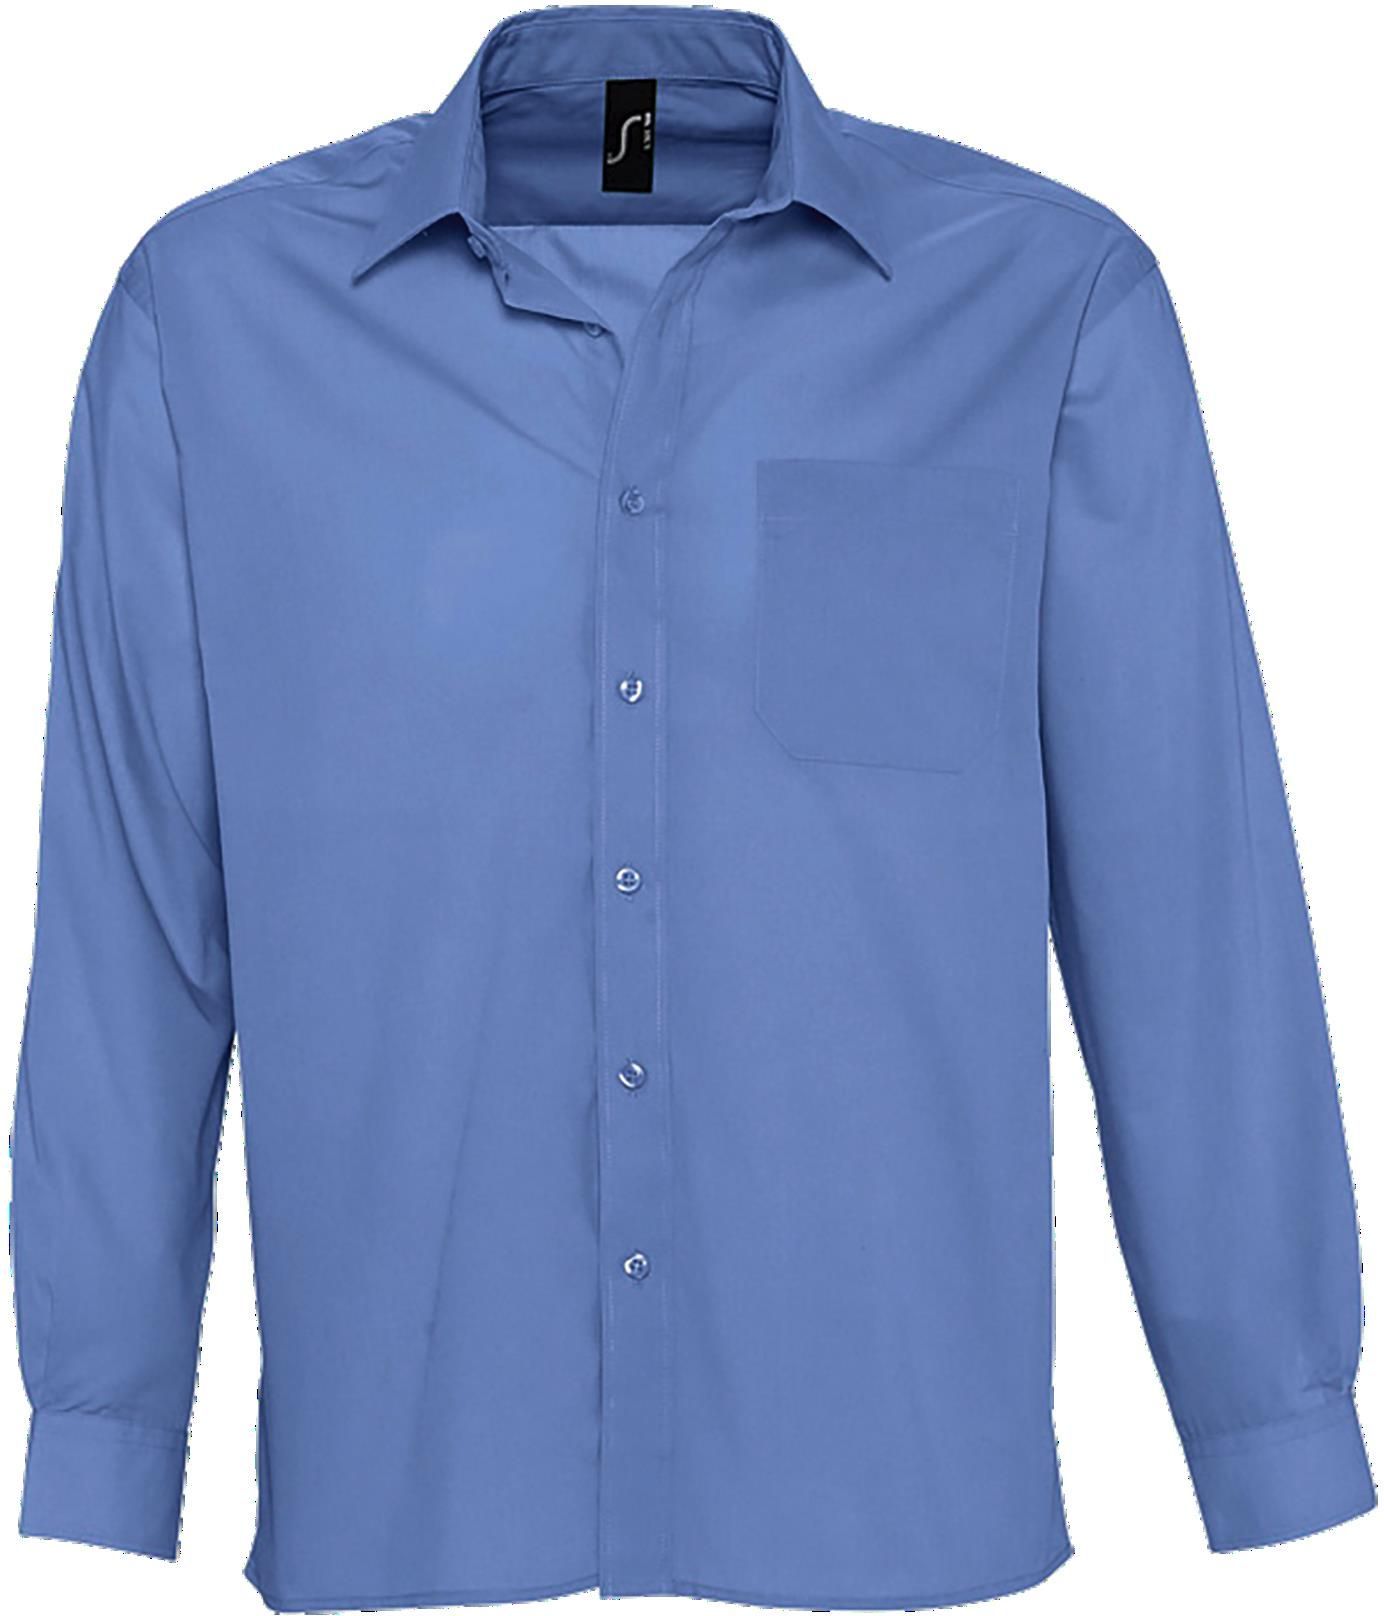 Ανδρικό μακρυμάνικο πουκάμισο από ποπλίνα Baltimore SOLS 16040 Medium Blue